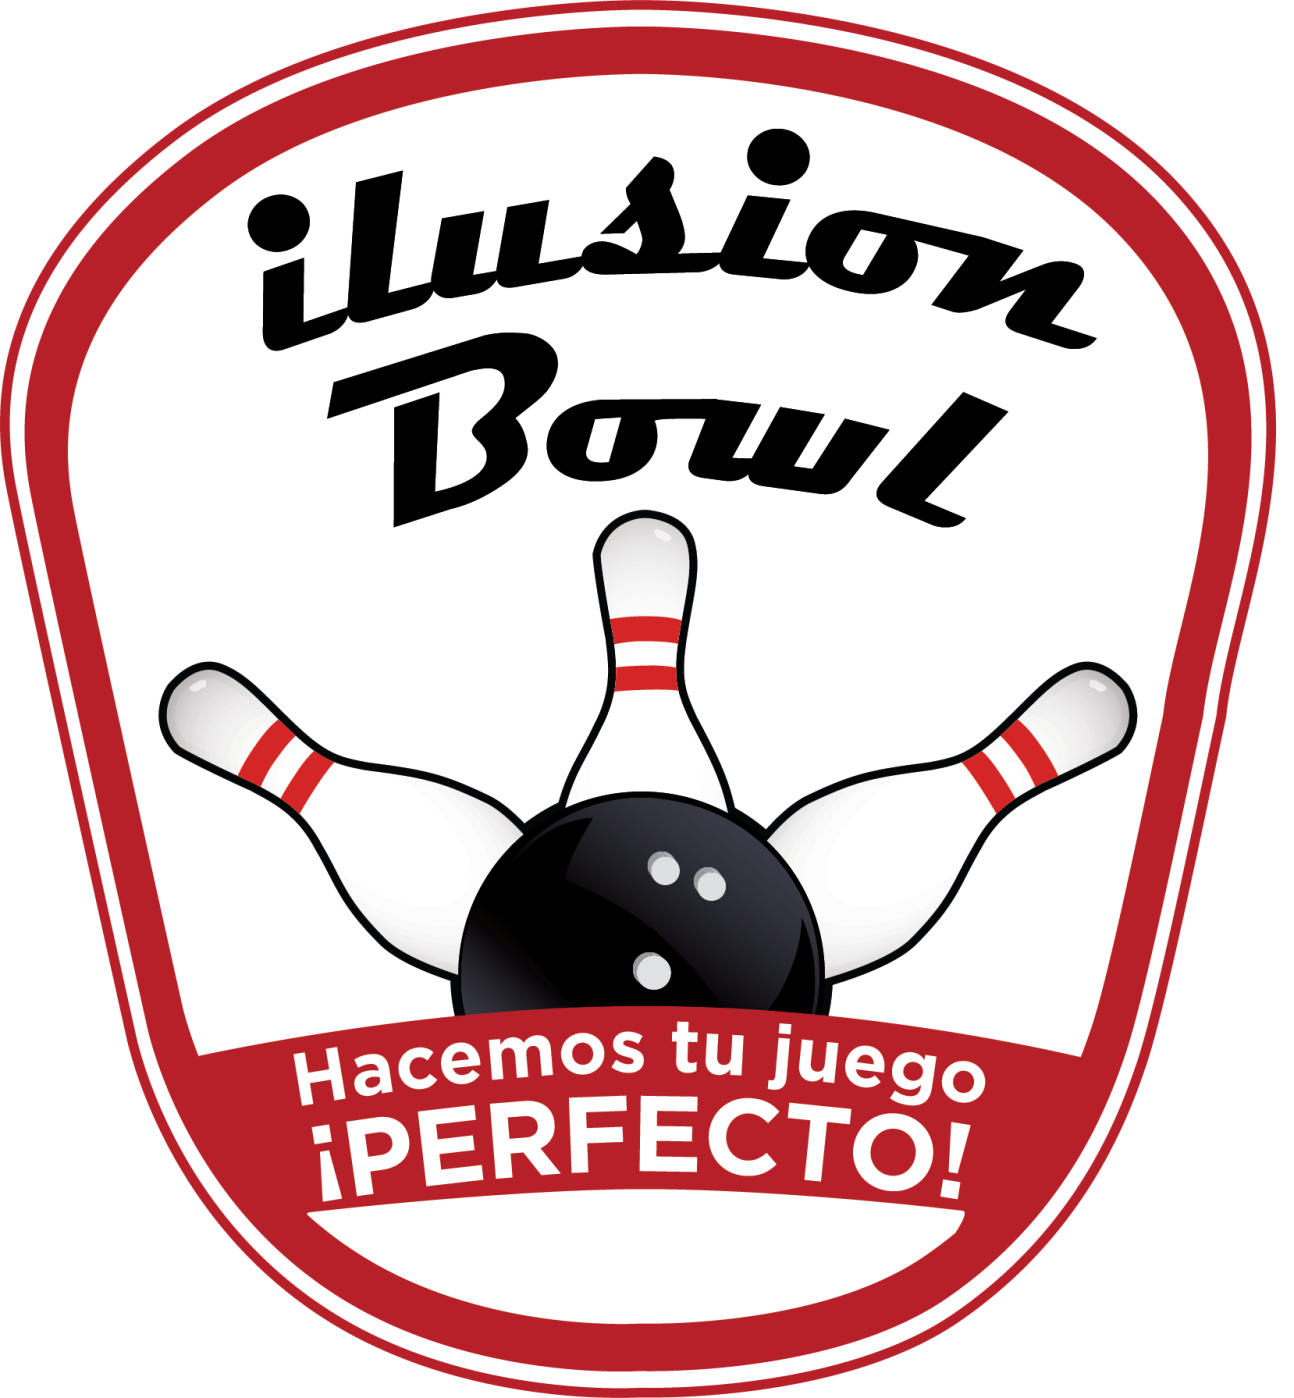 logo-ilusion-bowl